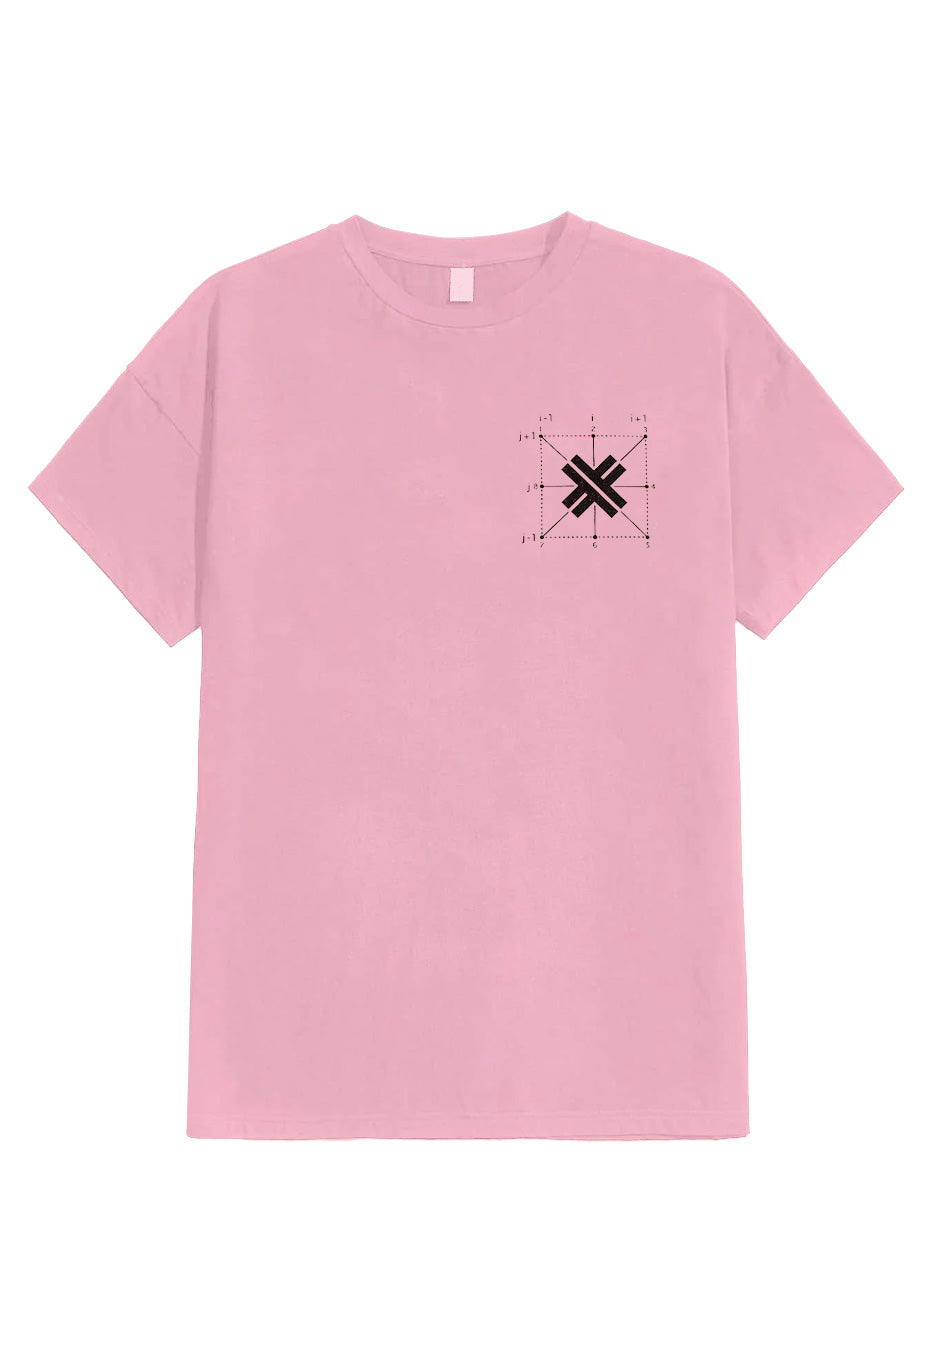 Electric Callboy - Tekknasia Pink - T-Shirt